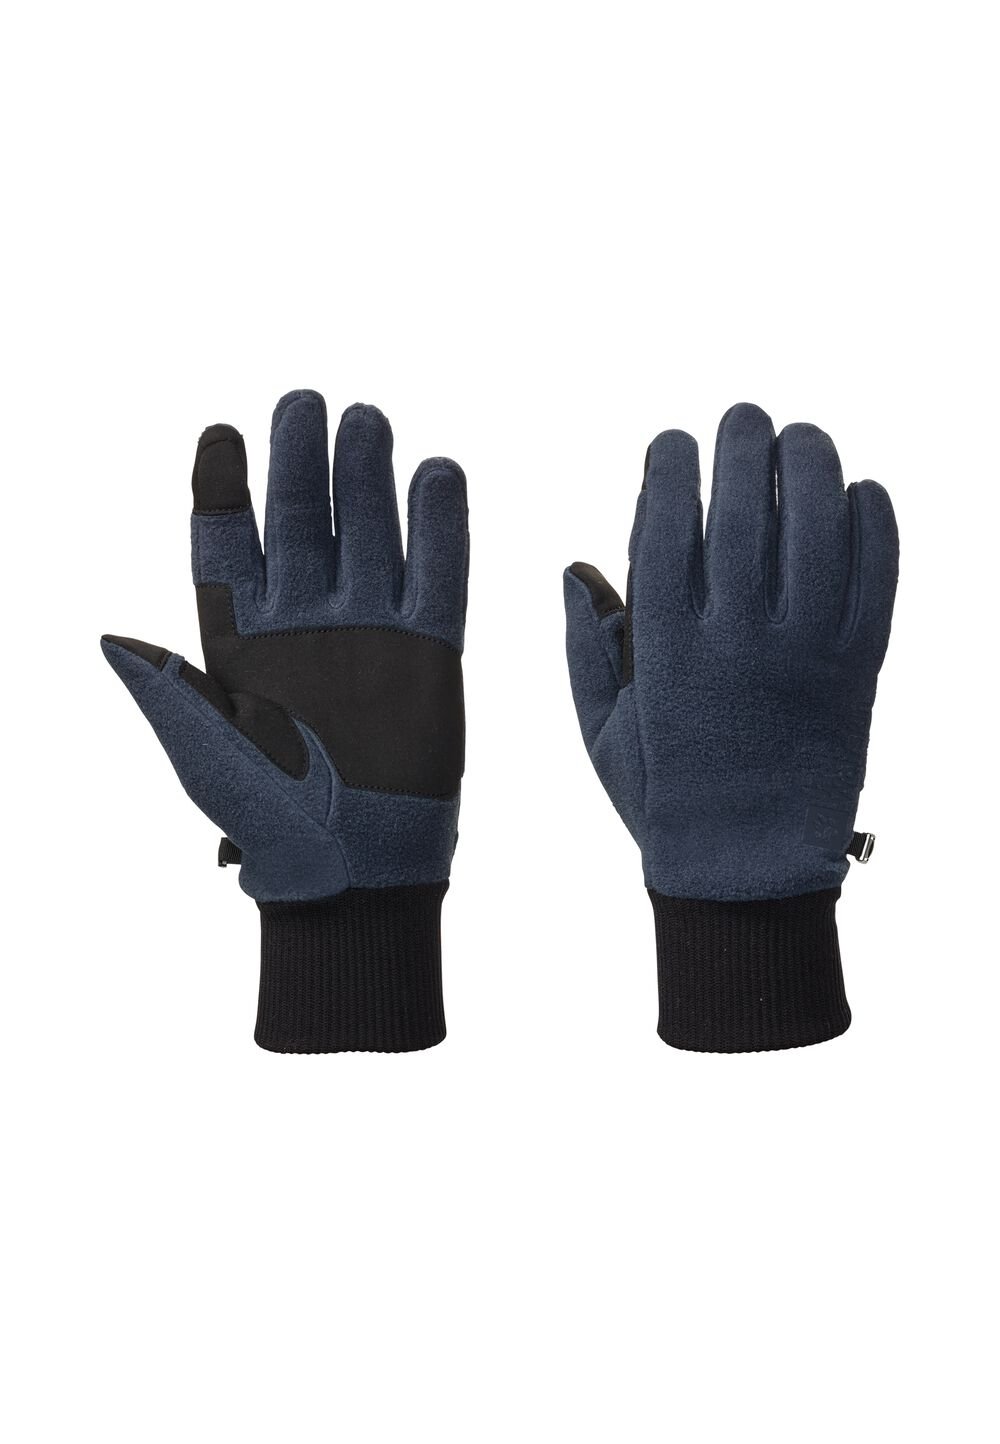 Jack Wolfskin Vertigo Glove Fleece handschoenen S blue night blue